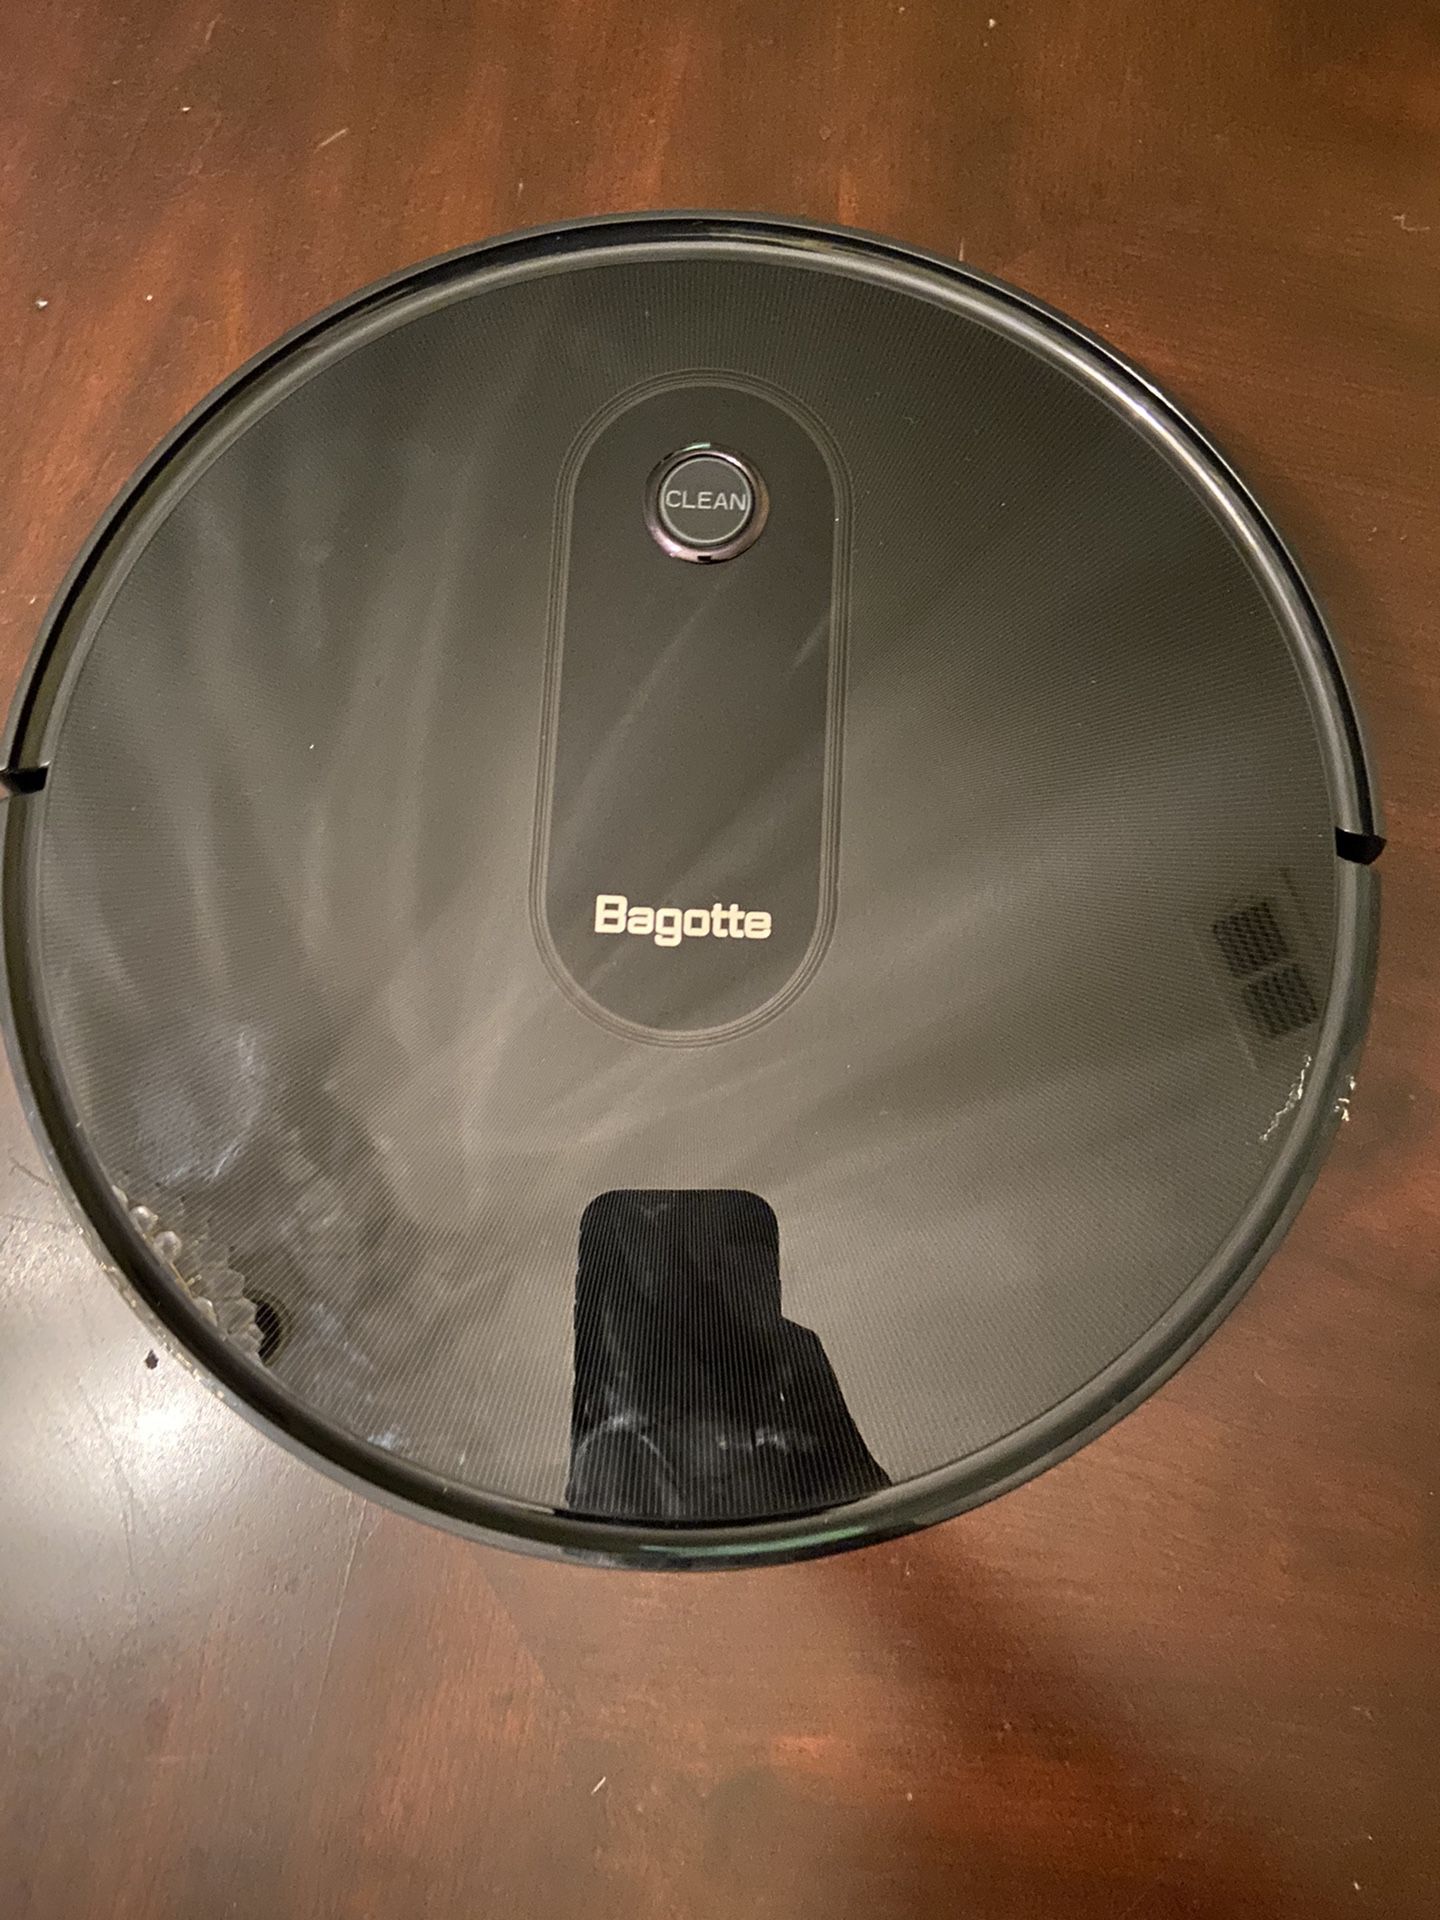 Bagotta Robotic Vacuum Cleaner